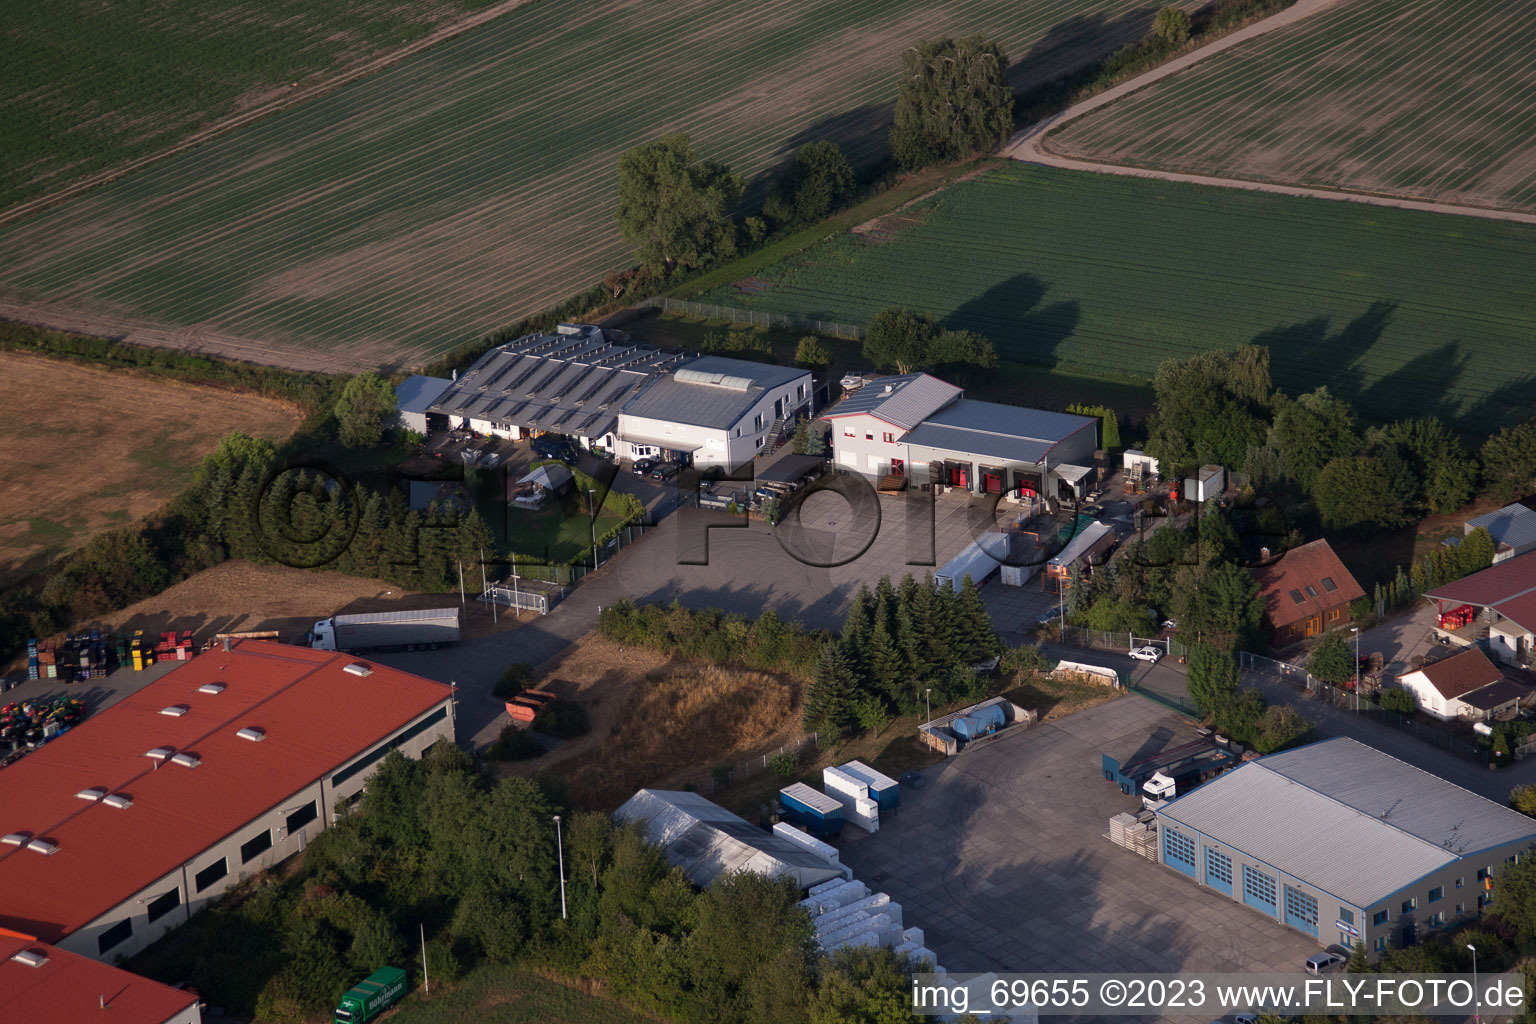 Zeiskam dans le département Rhénanie-Palatinat, Allemagne vu d'un drone